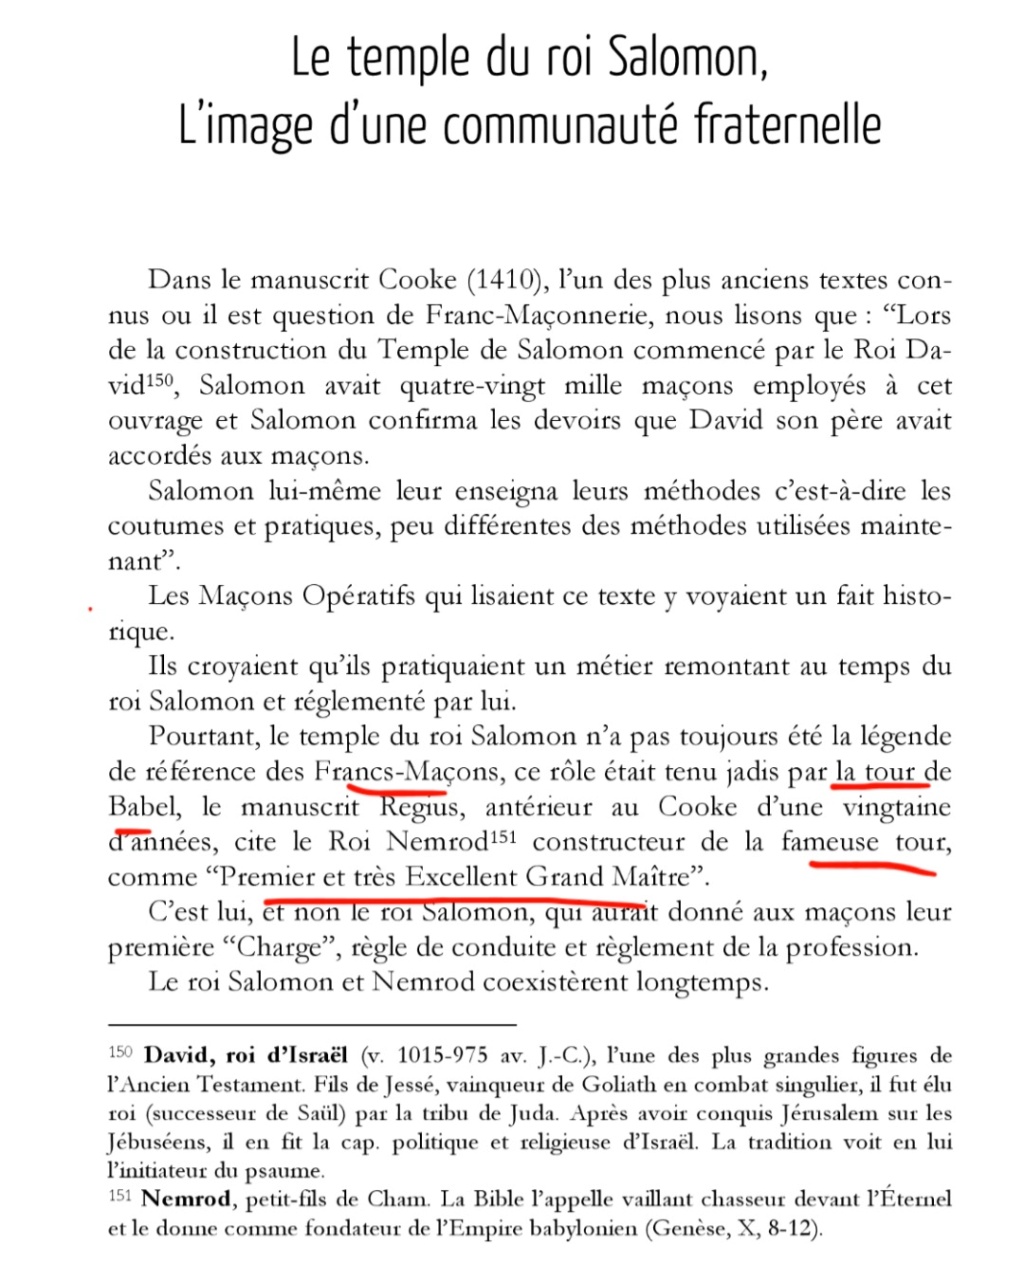 La franc-maçonnerie, la Gnose et le gnosticisme.  - Page 7 Scree624